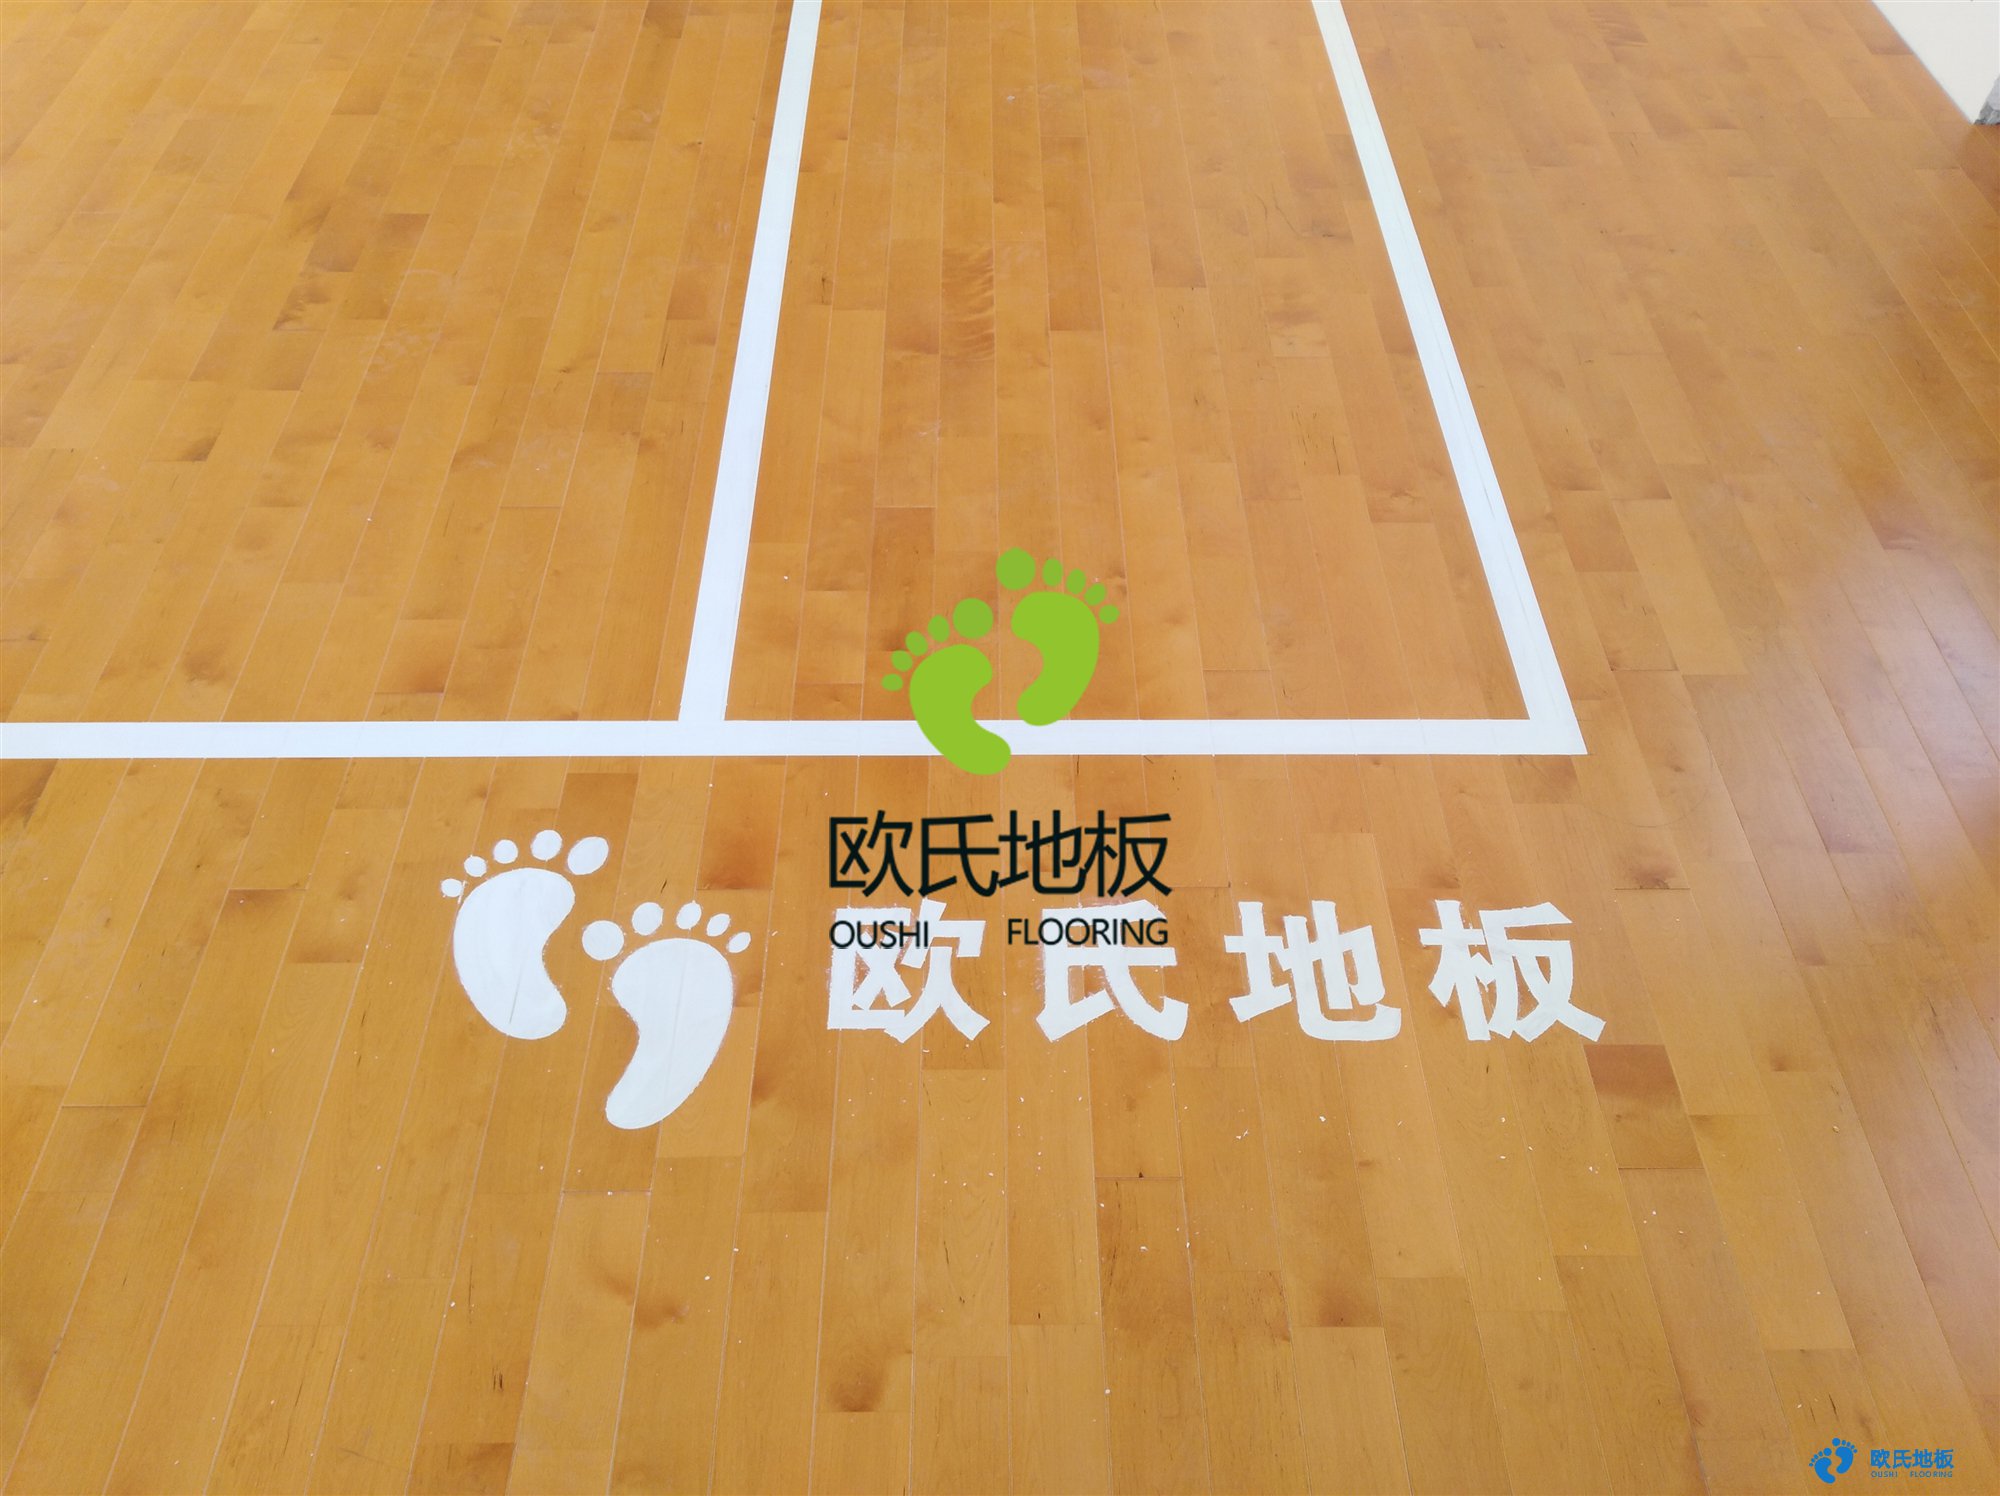 体育馆用竹木地板 体育馆用复合地板1标准